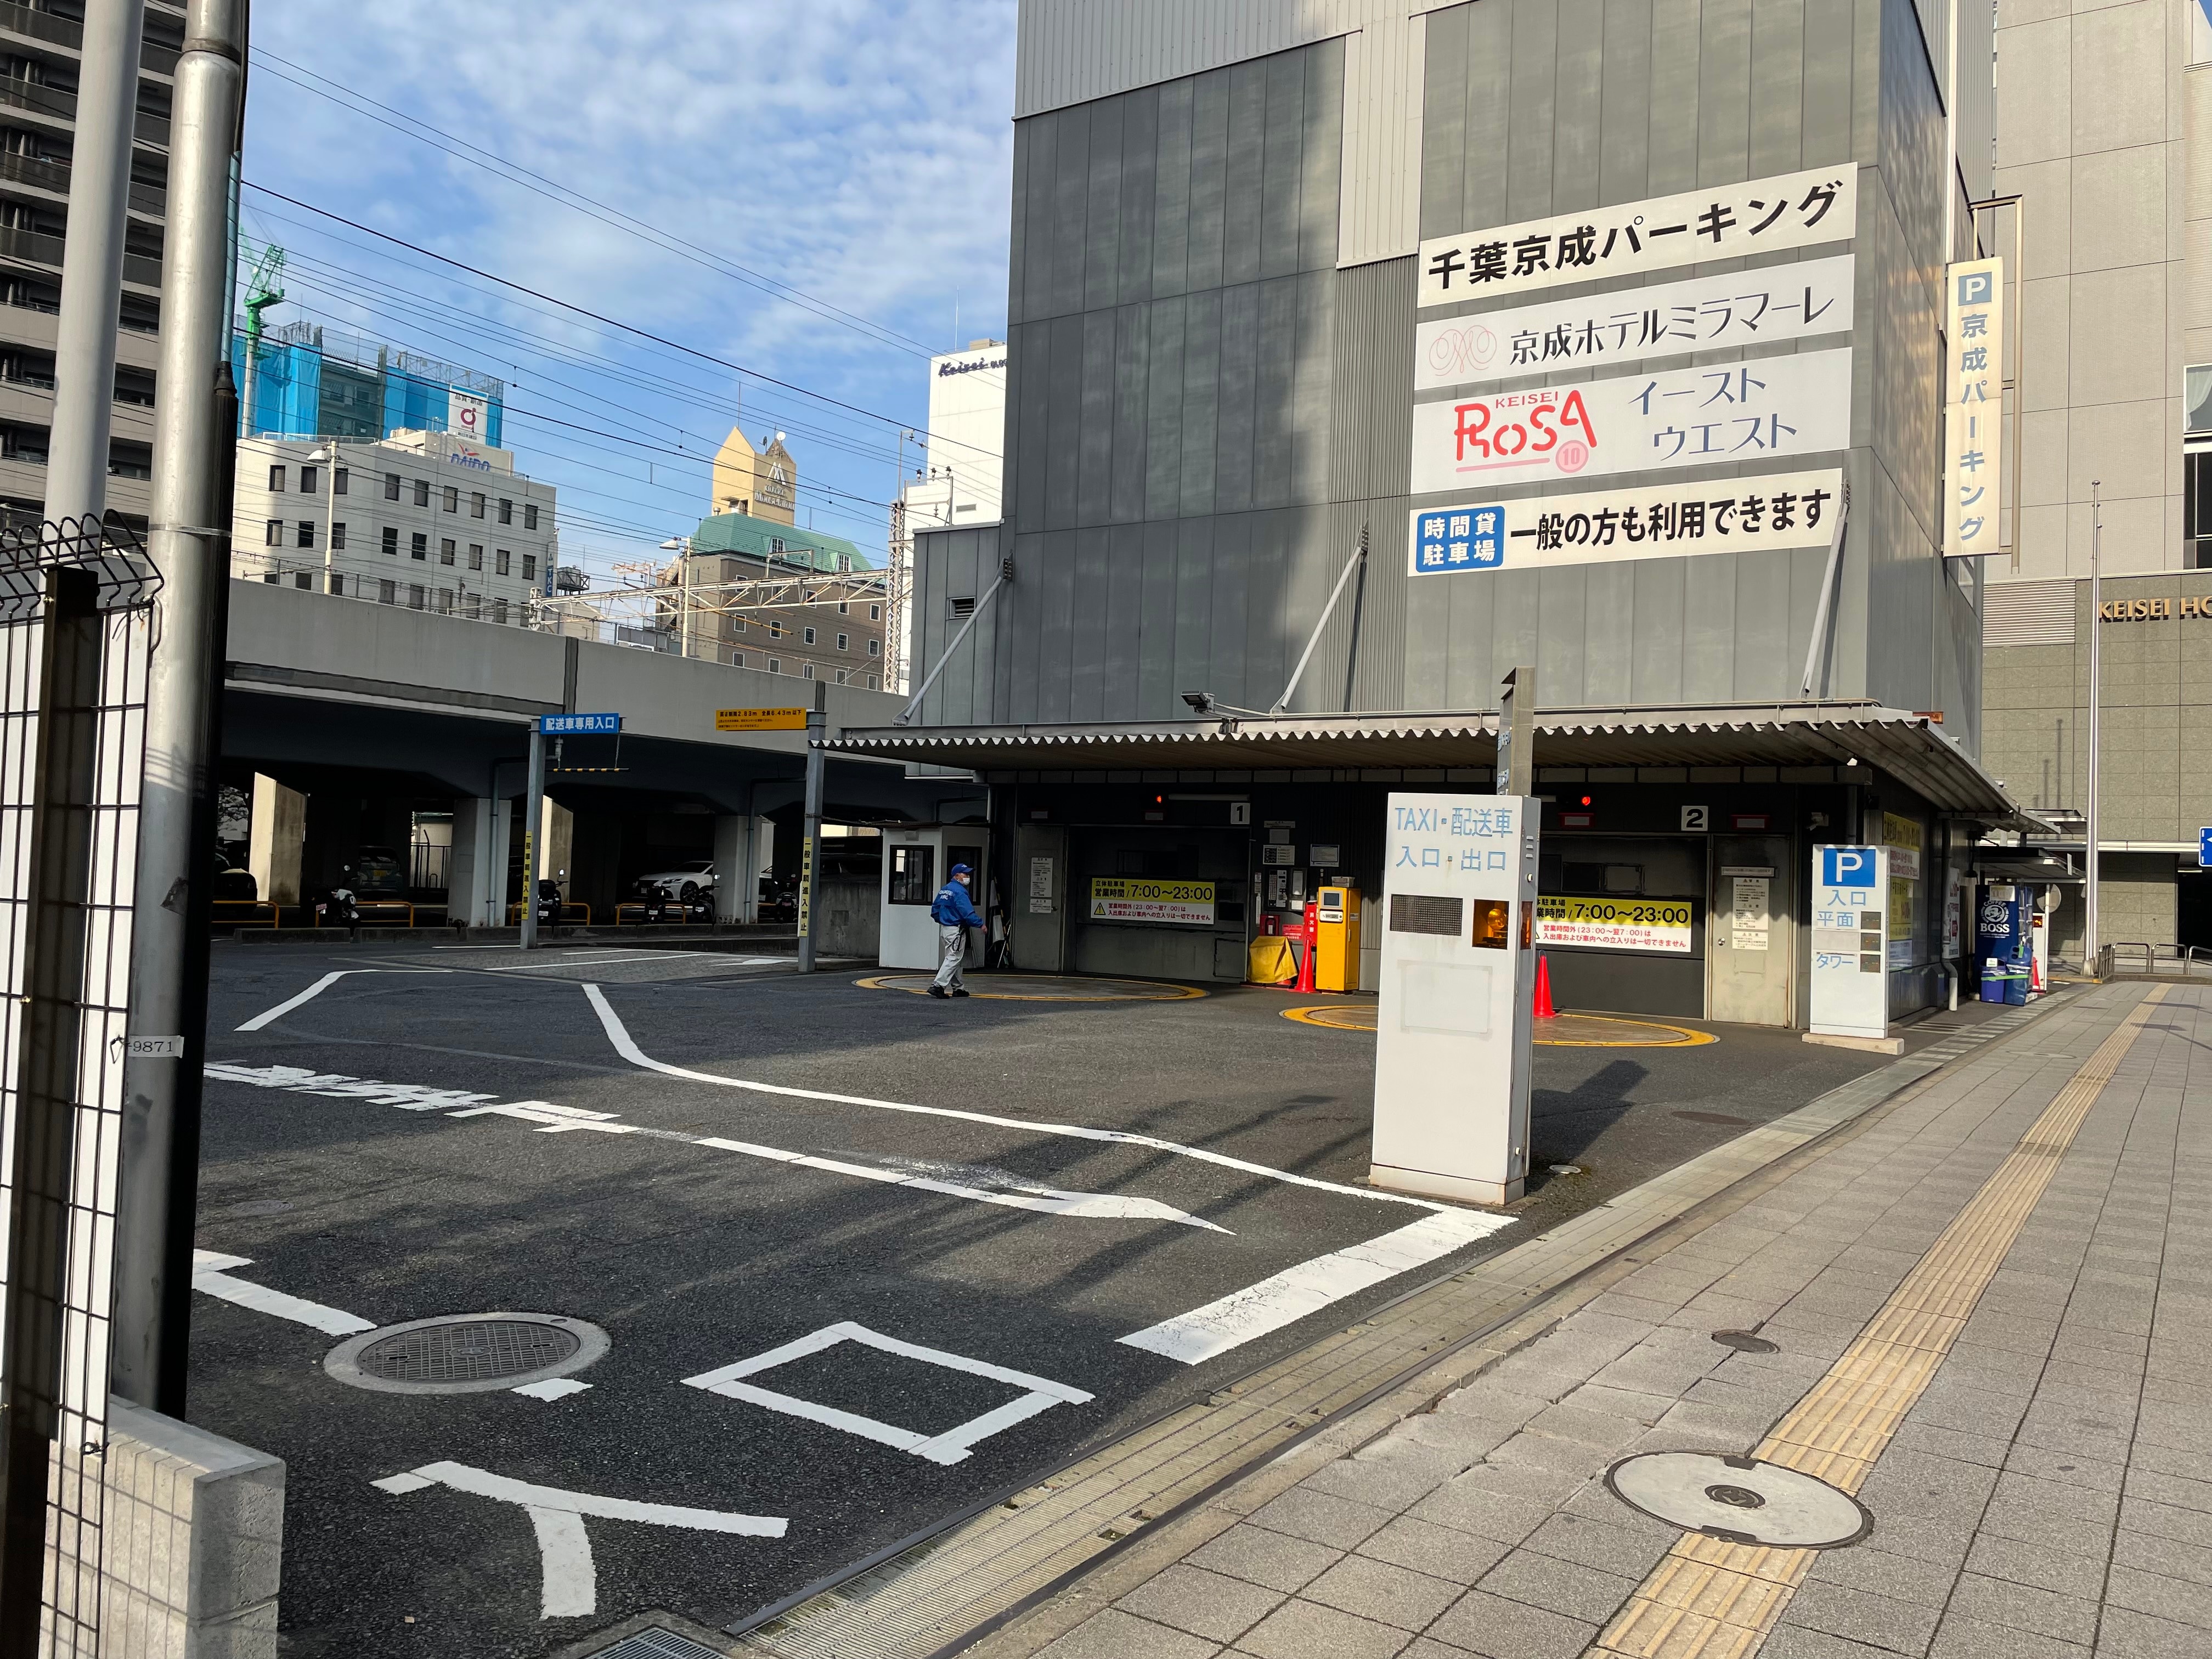 Keisei Parking